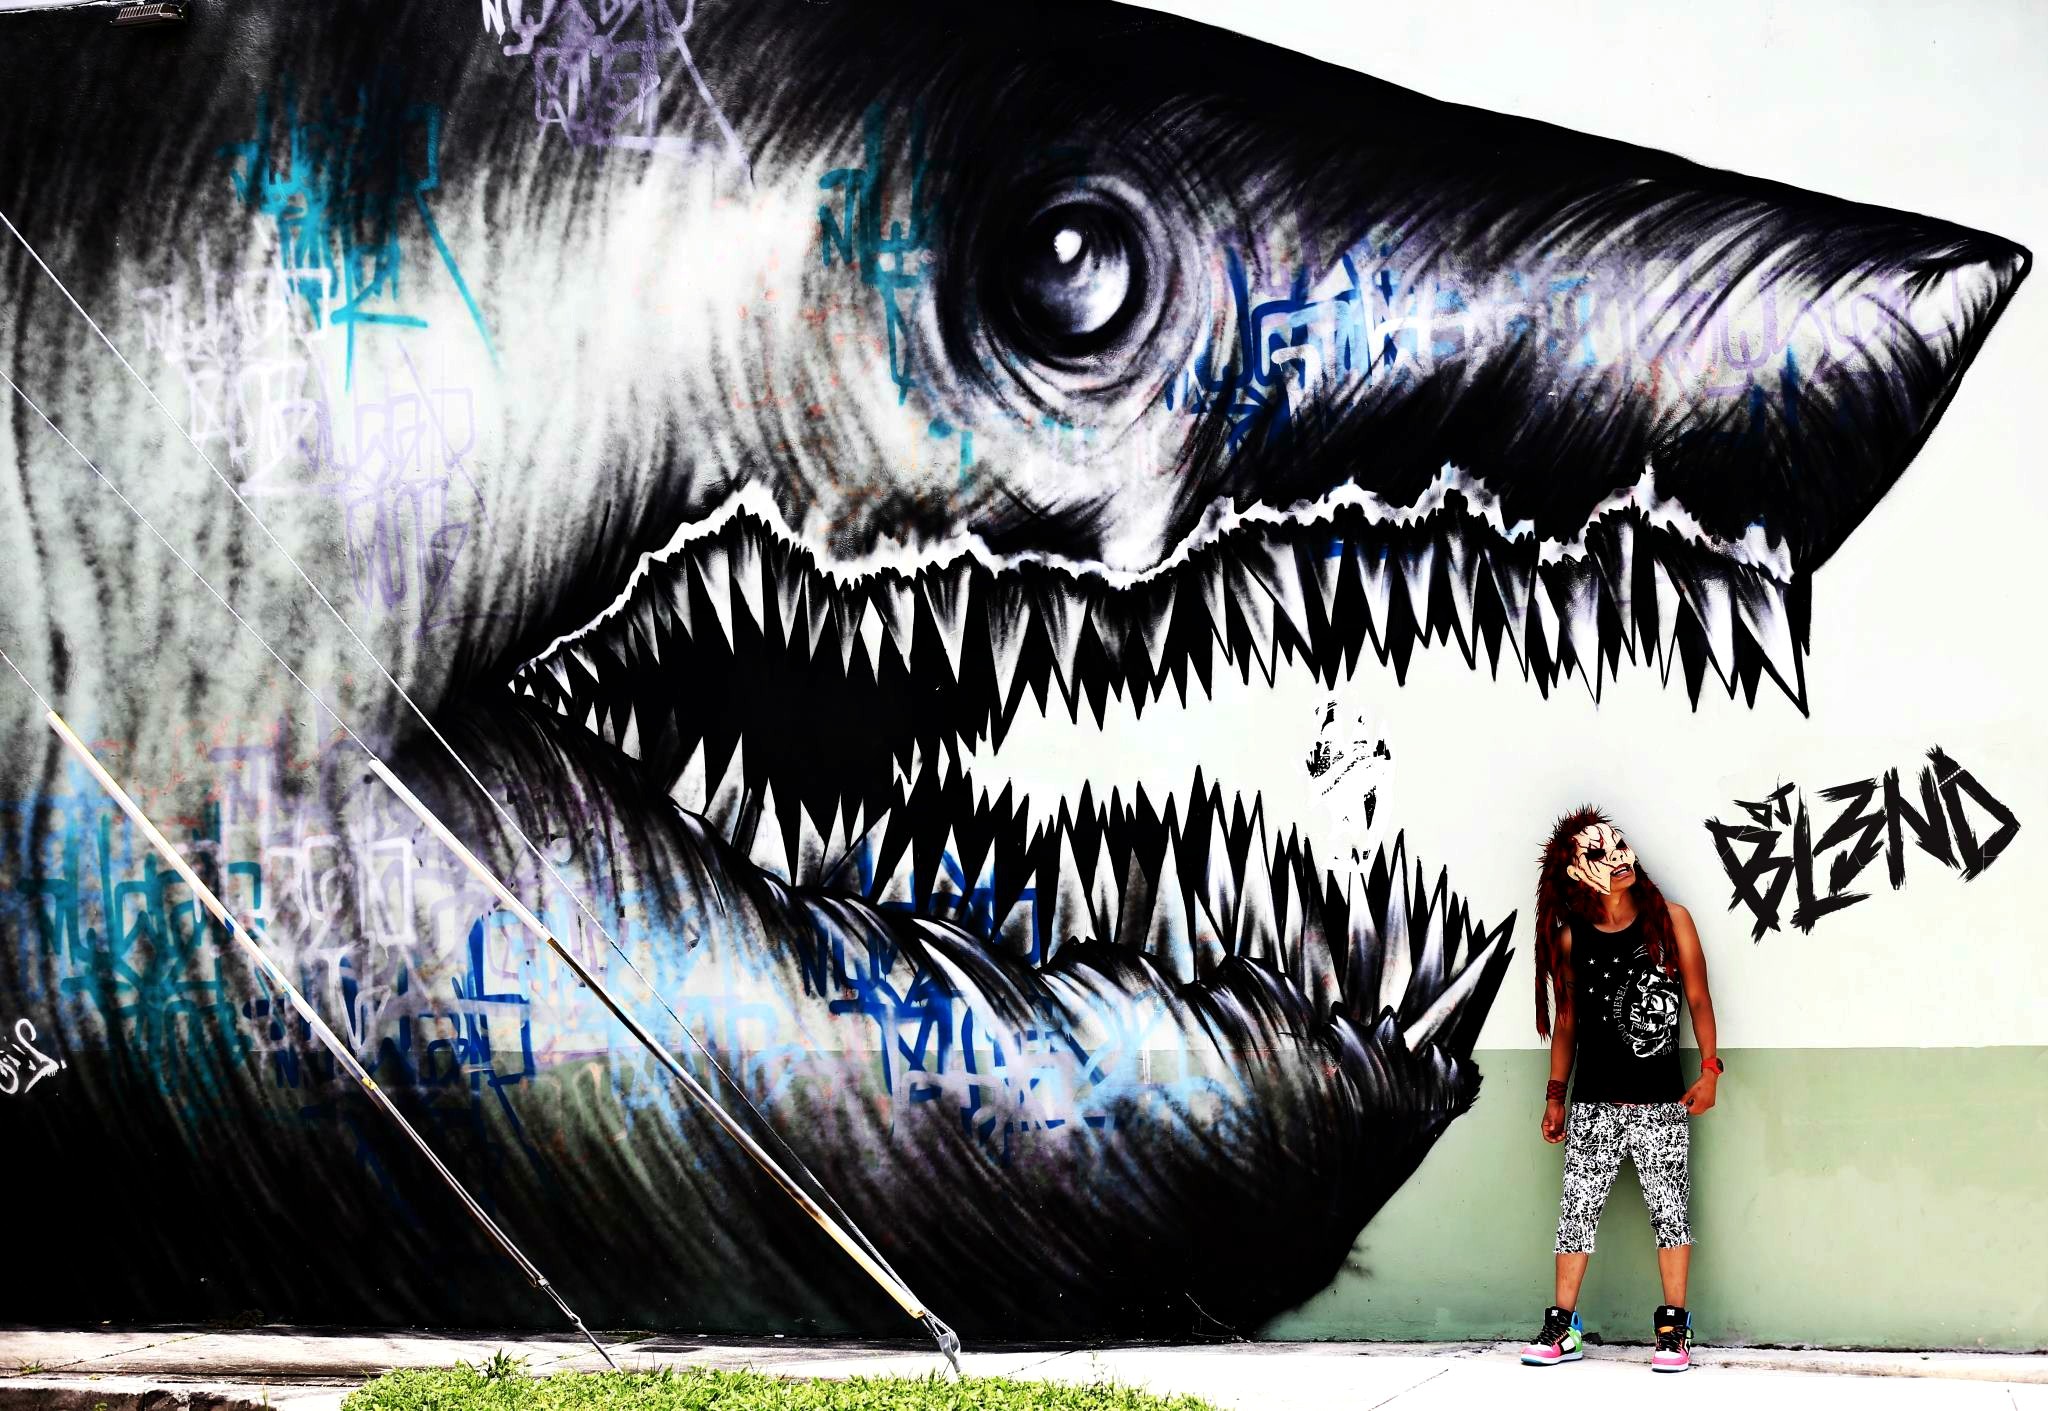 General 2048x1411 shark teeth graffiti wall